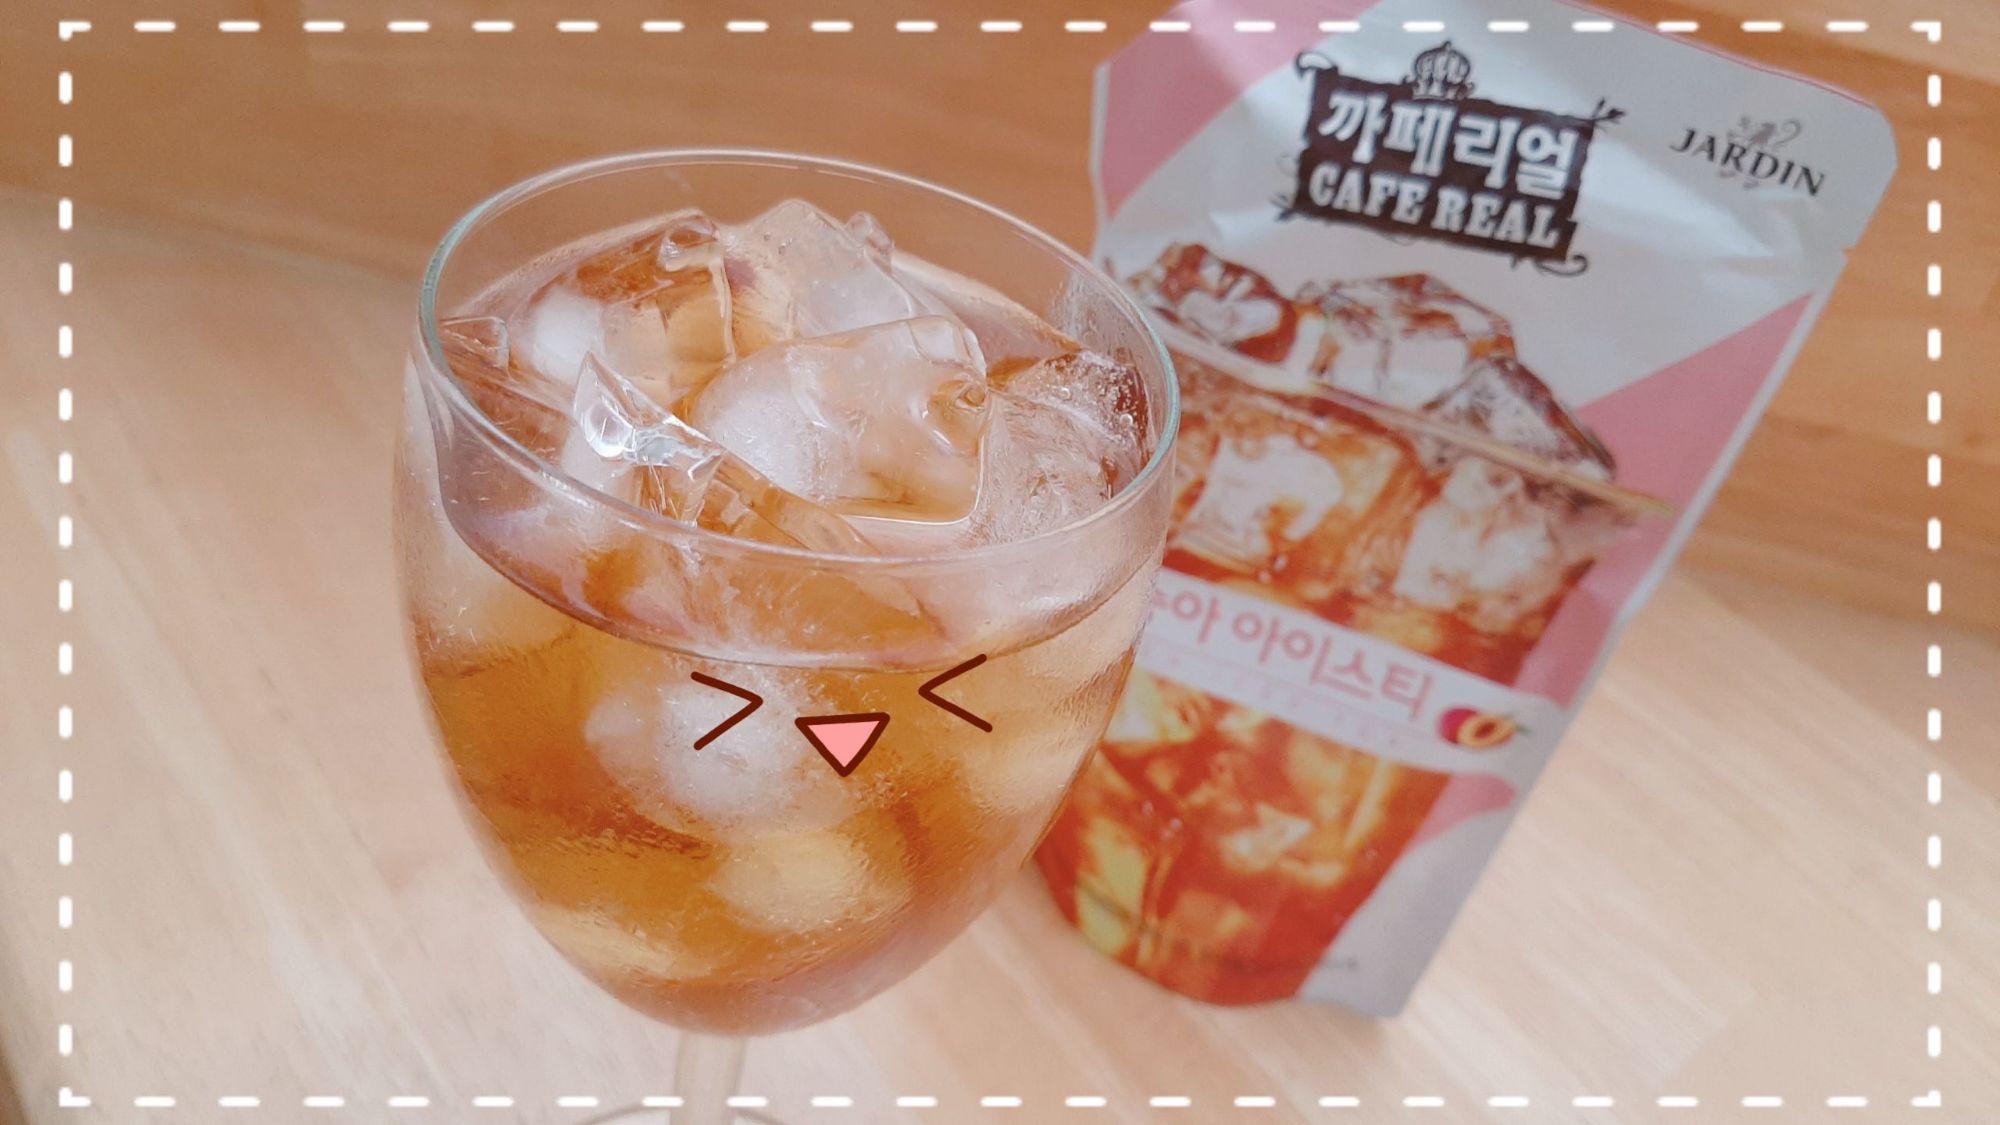 ชาพีชเกาหลี พร้อมดื่ม 230 ml. 까페리얼복숭아아이스티 JARDIN CAFE REAL Peach Iced Tea